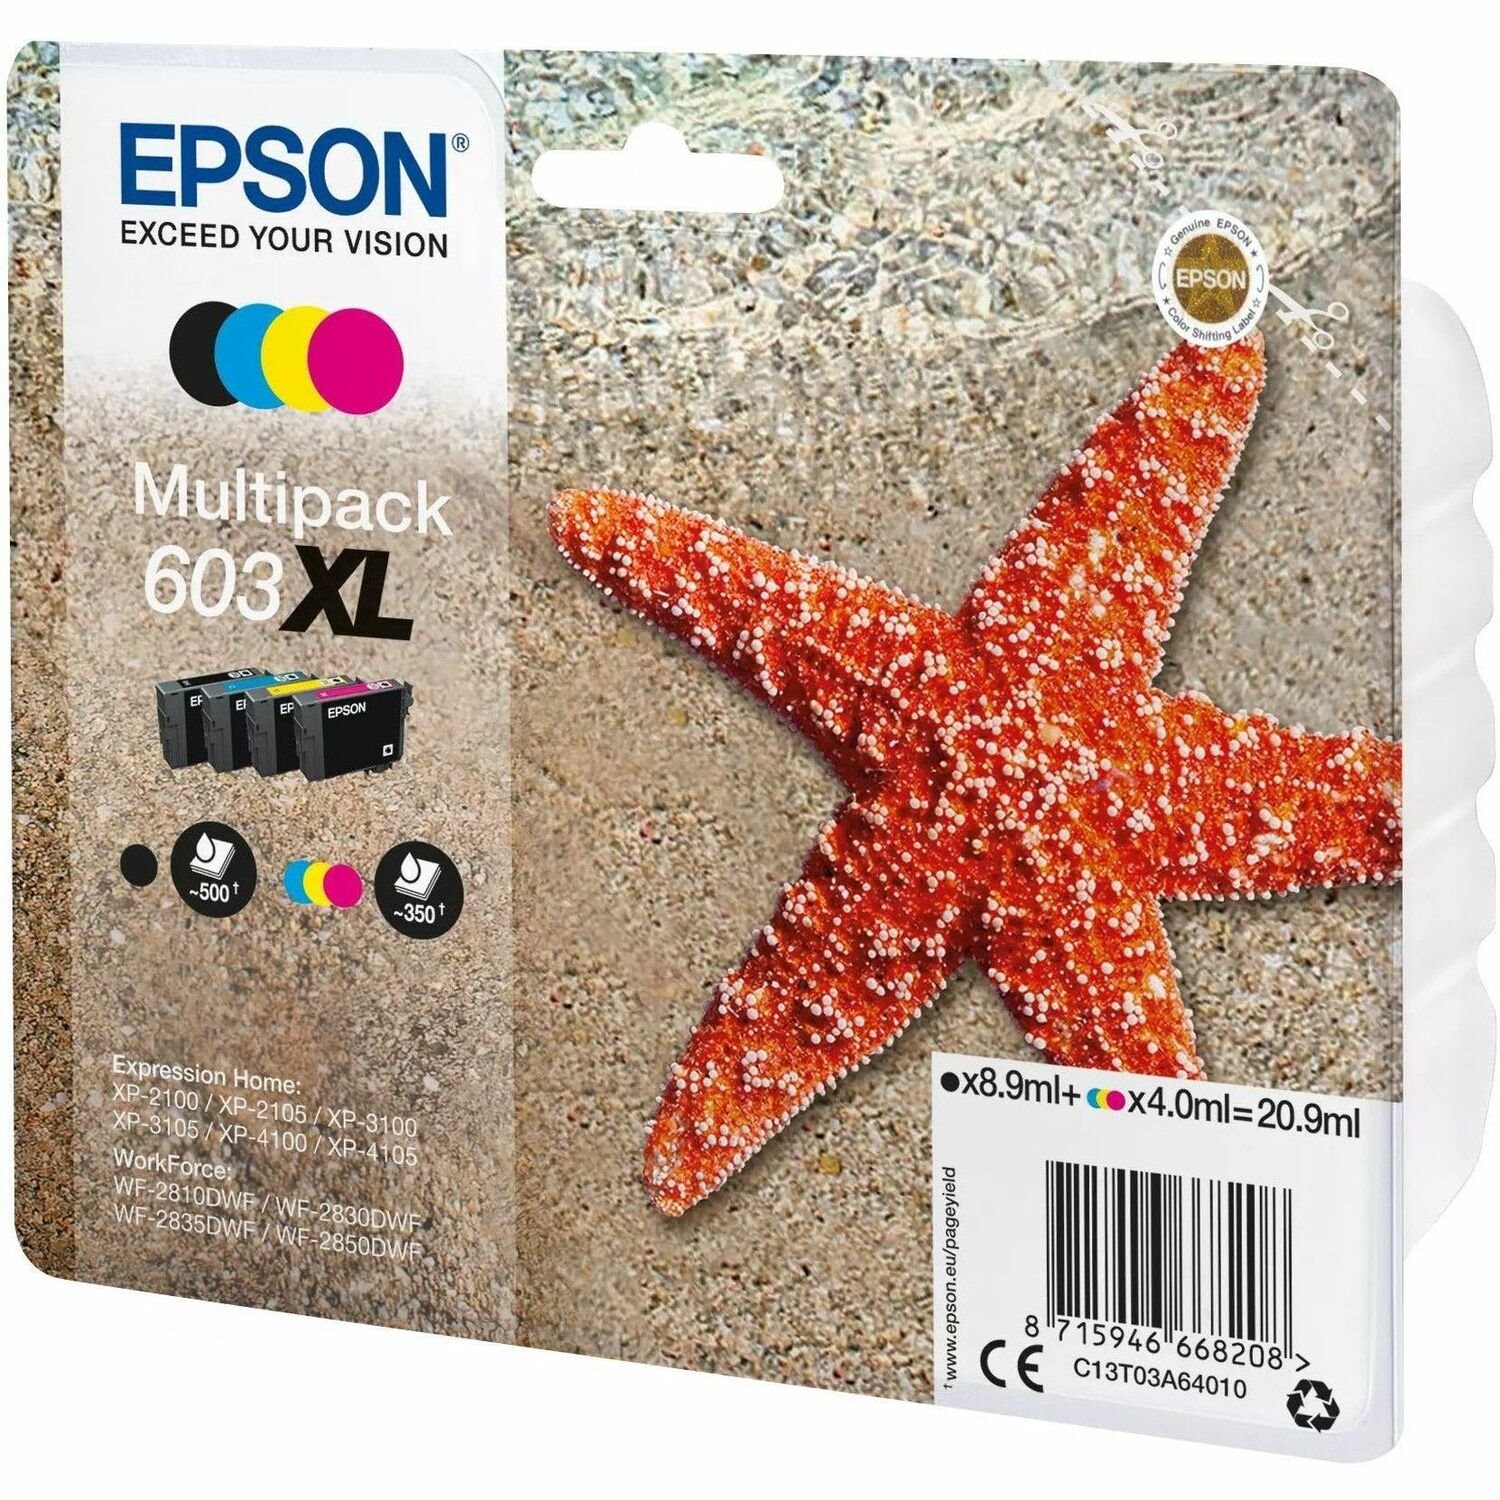 Epson 603XL Original Extra Large Yield Inkjet Ink Cartridge - Multi-pack - Black, Cyan, Magenta, Yellow - 4 / Pack